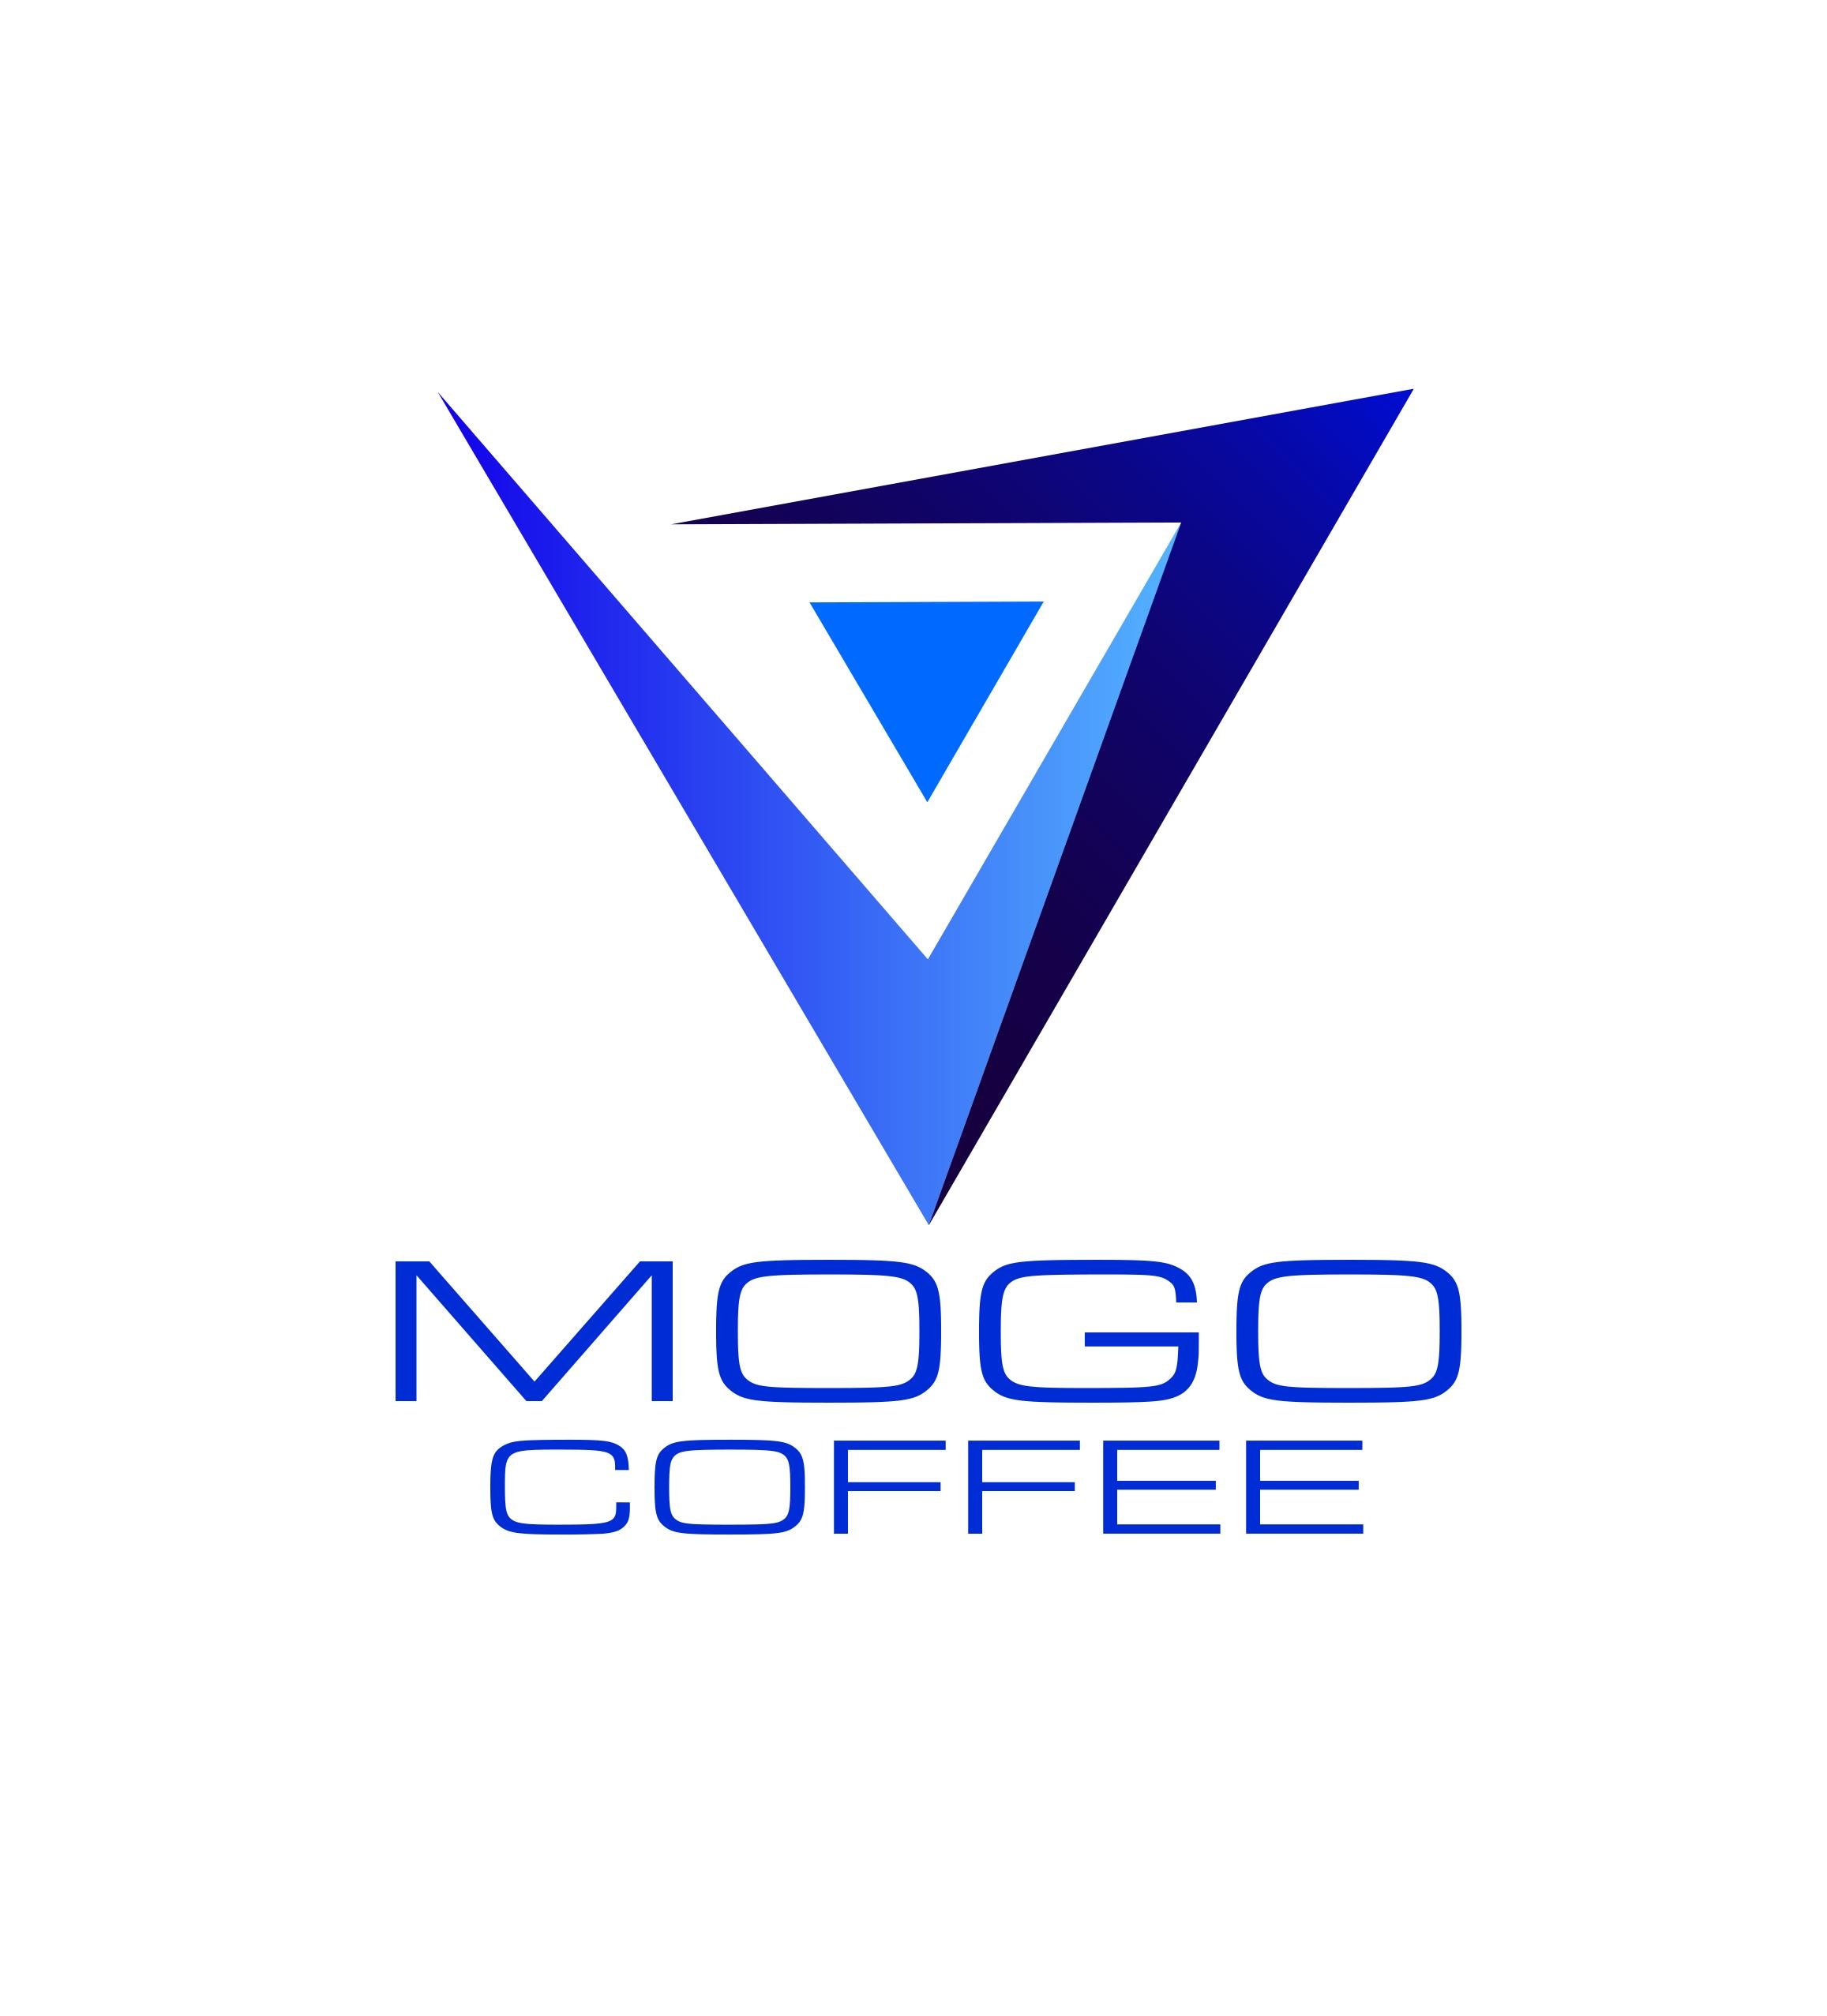 世界最高級コーヒー豆のみを焙煎する、MOGO COFFEE。
エーゲ海の島々で飲まれるような貴賓溢れる最高級コーヒーを焙煎仕立の鮮度命を掲げて自家焙煎を行っています。
蒼い海、白い建物、深い空、ヨーロッパの美しい風景が壮大に香るコーヒーをイメージして、MOGO焙煎を行っています。コーヒーを通じて様々な方と繋がりたいです